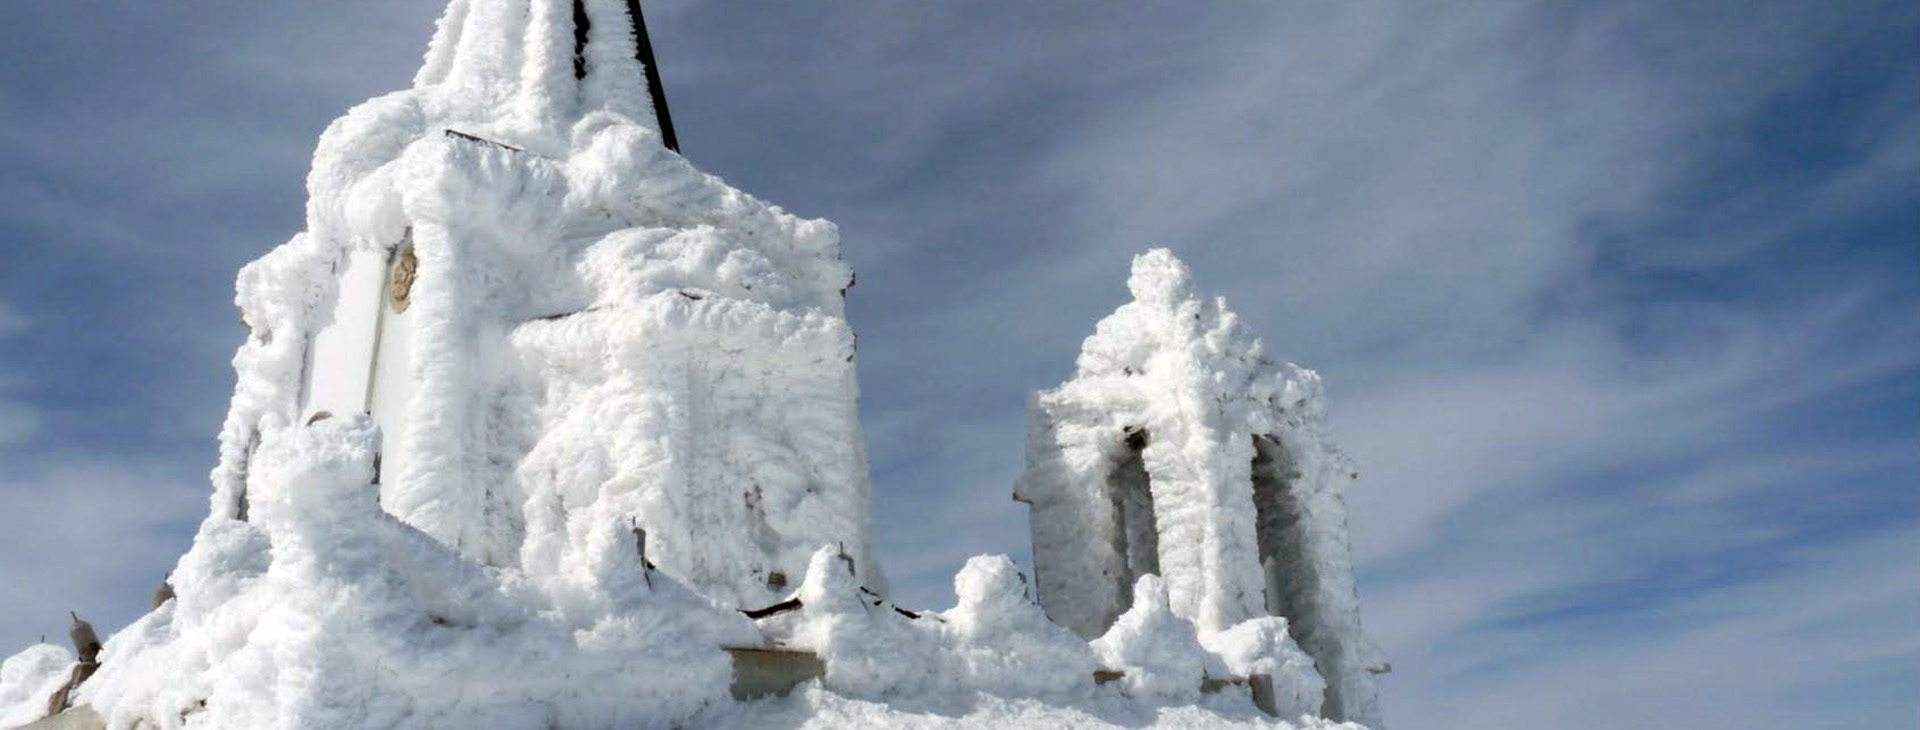 Profitis Ilias church coverd by snow at the peak of Mt. Kaimaktsalan, Pella